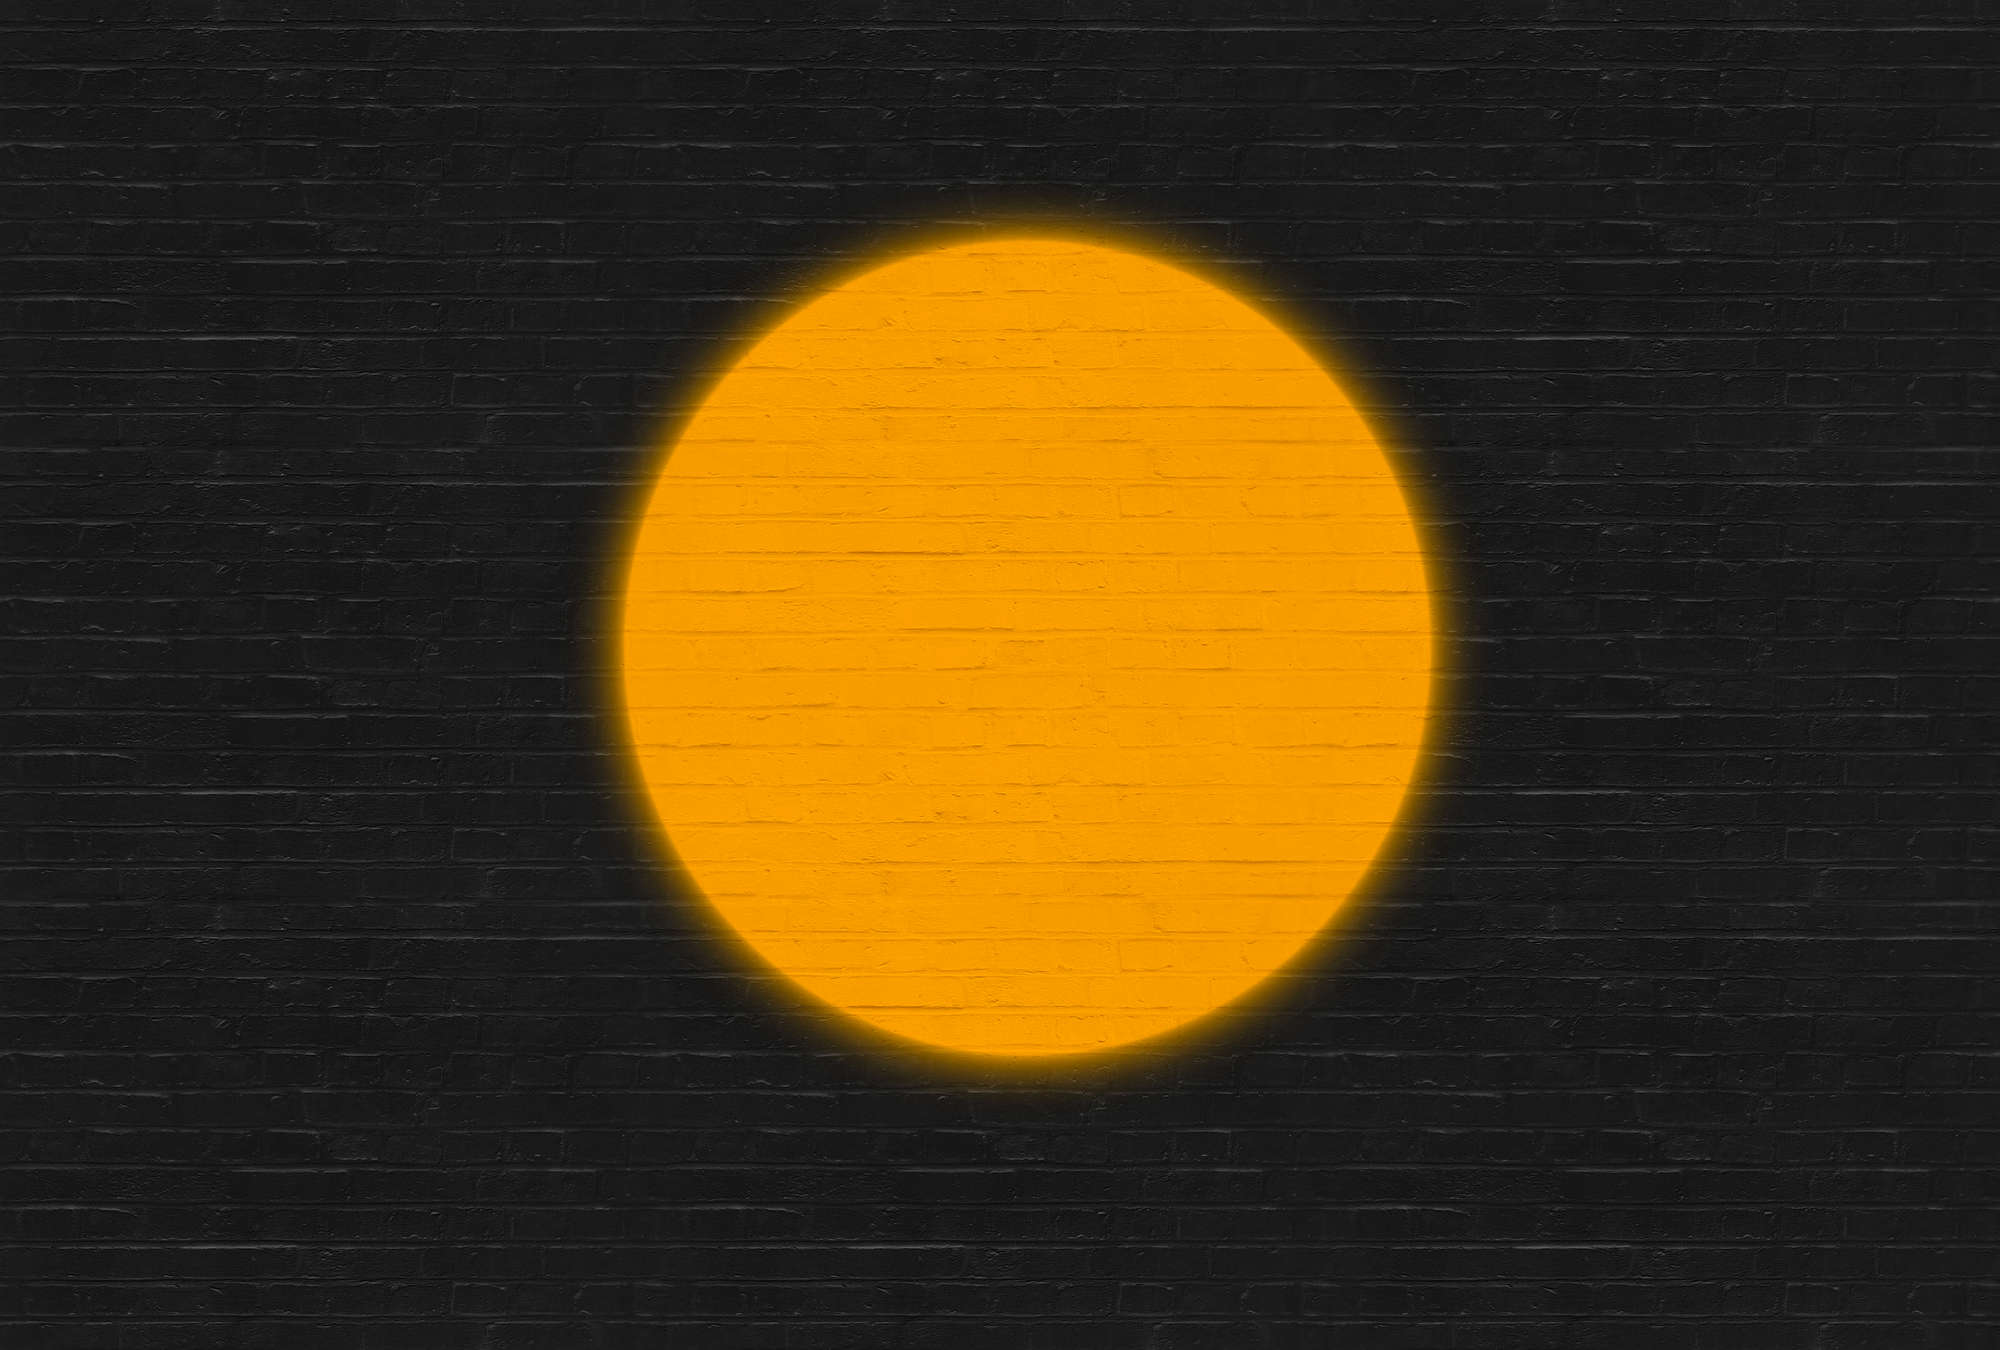             Carta da parati dal design minimalista e dall'aspetto di mattoni - Arancione, Nero
        